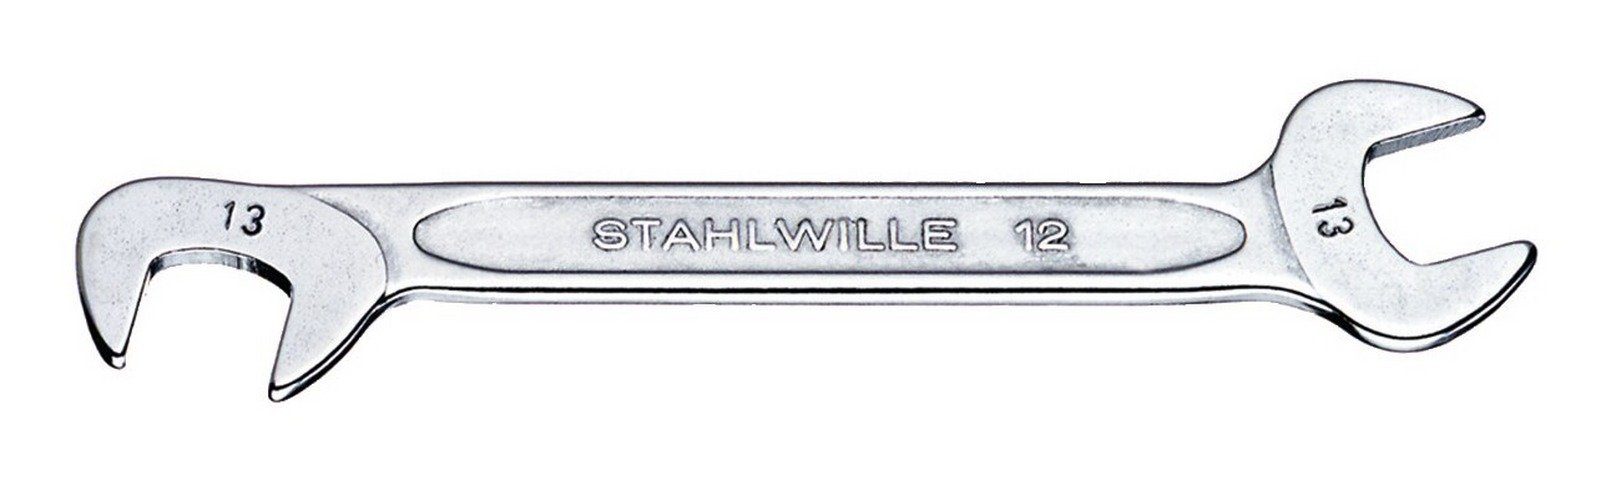 Stahlwille Maulschlüssel, Doppelmaulschlüssel klein 3,5 mm